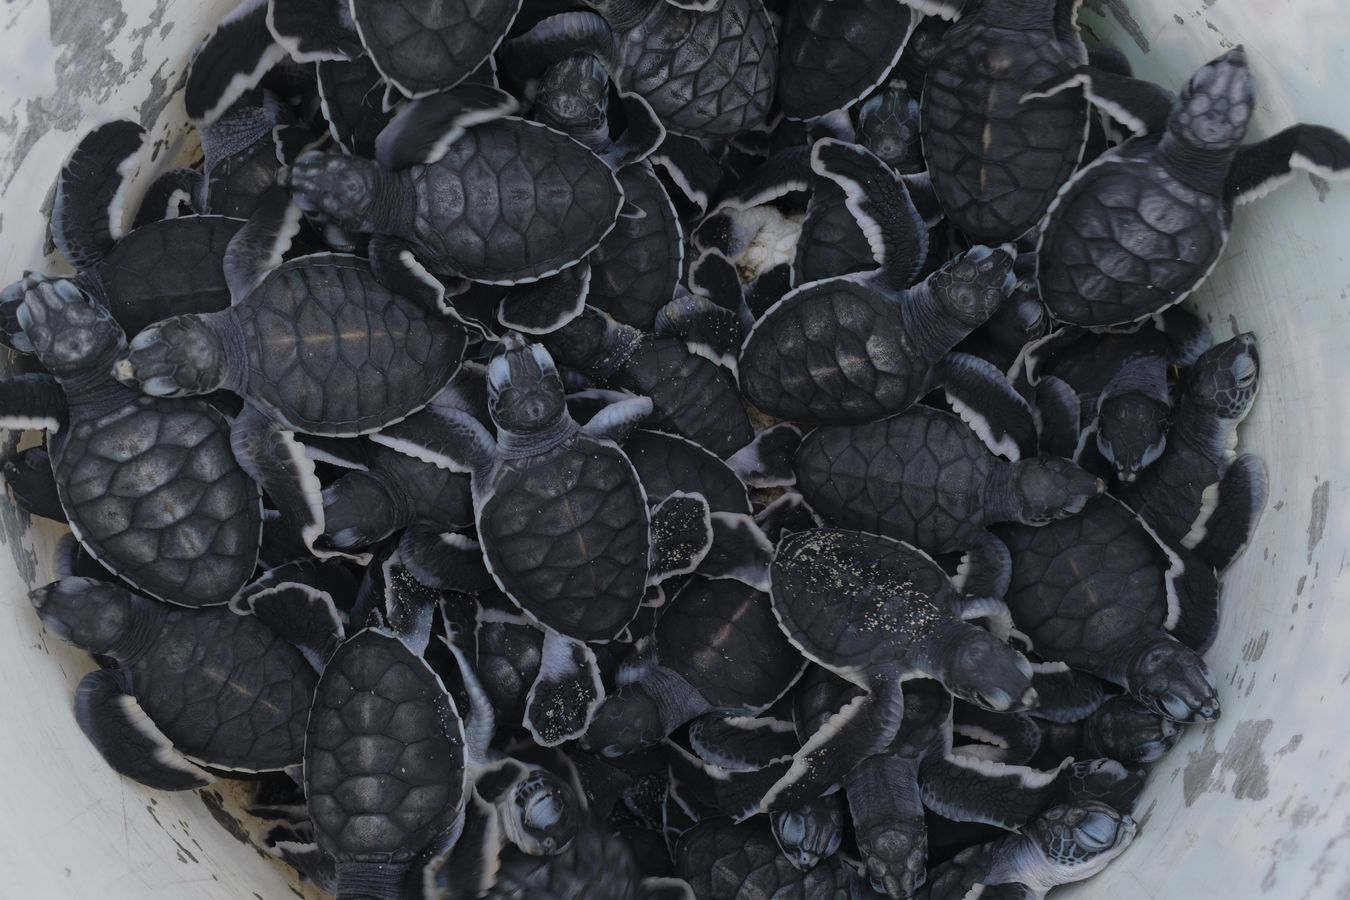 Dozens of newborn green turtles in their individual hatchery nests.